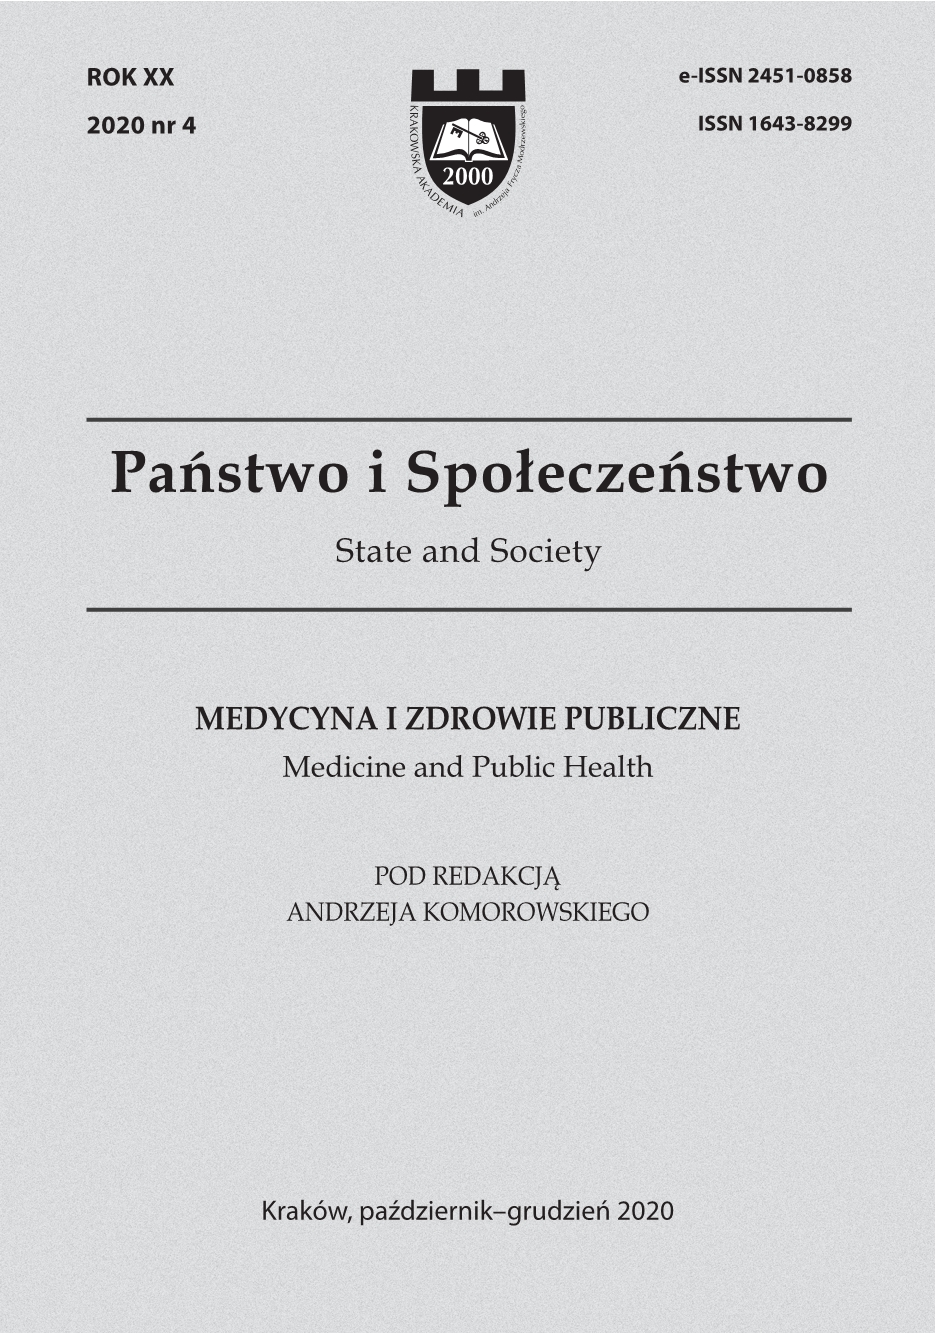 "Family - Health - Disease" (Mezinárodní conference "Rodina - Zdraví - Nemoc"), November 19, 2020, Zlin. Report. Cover Image